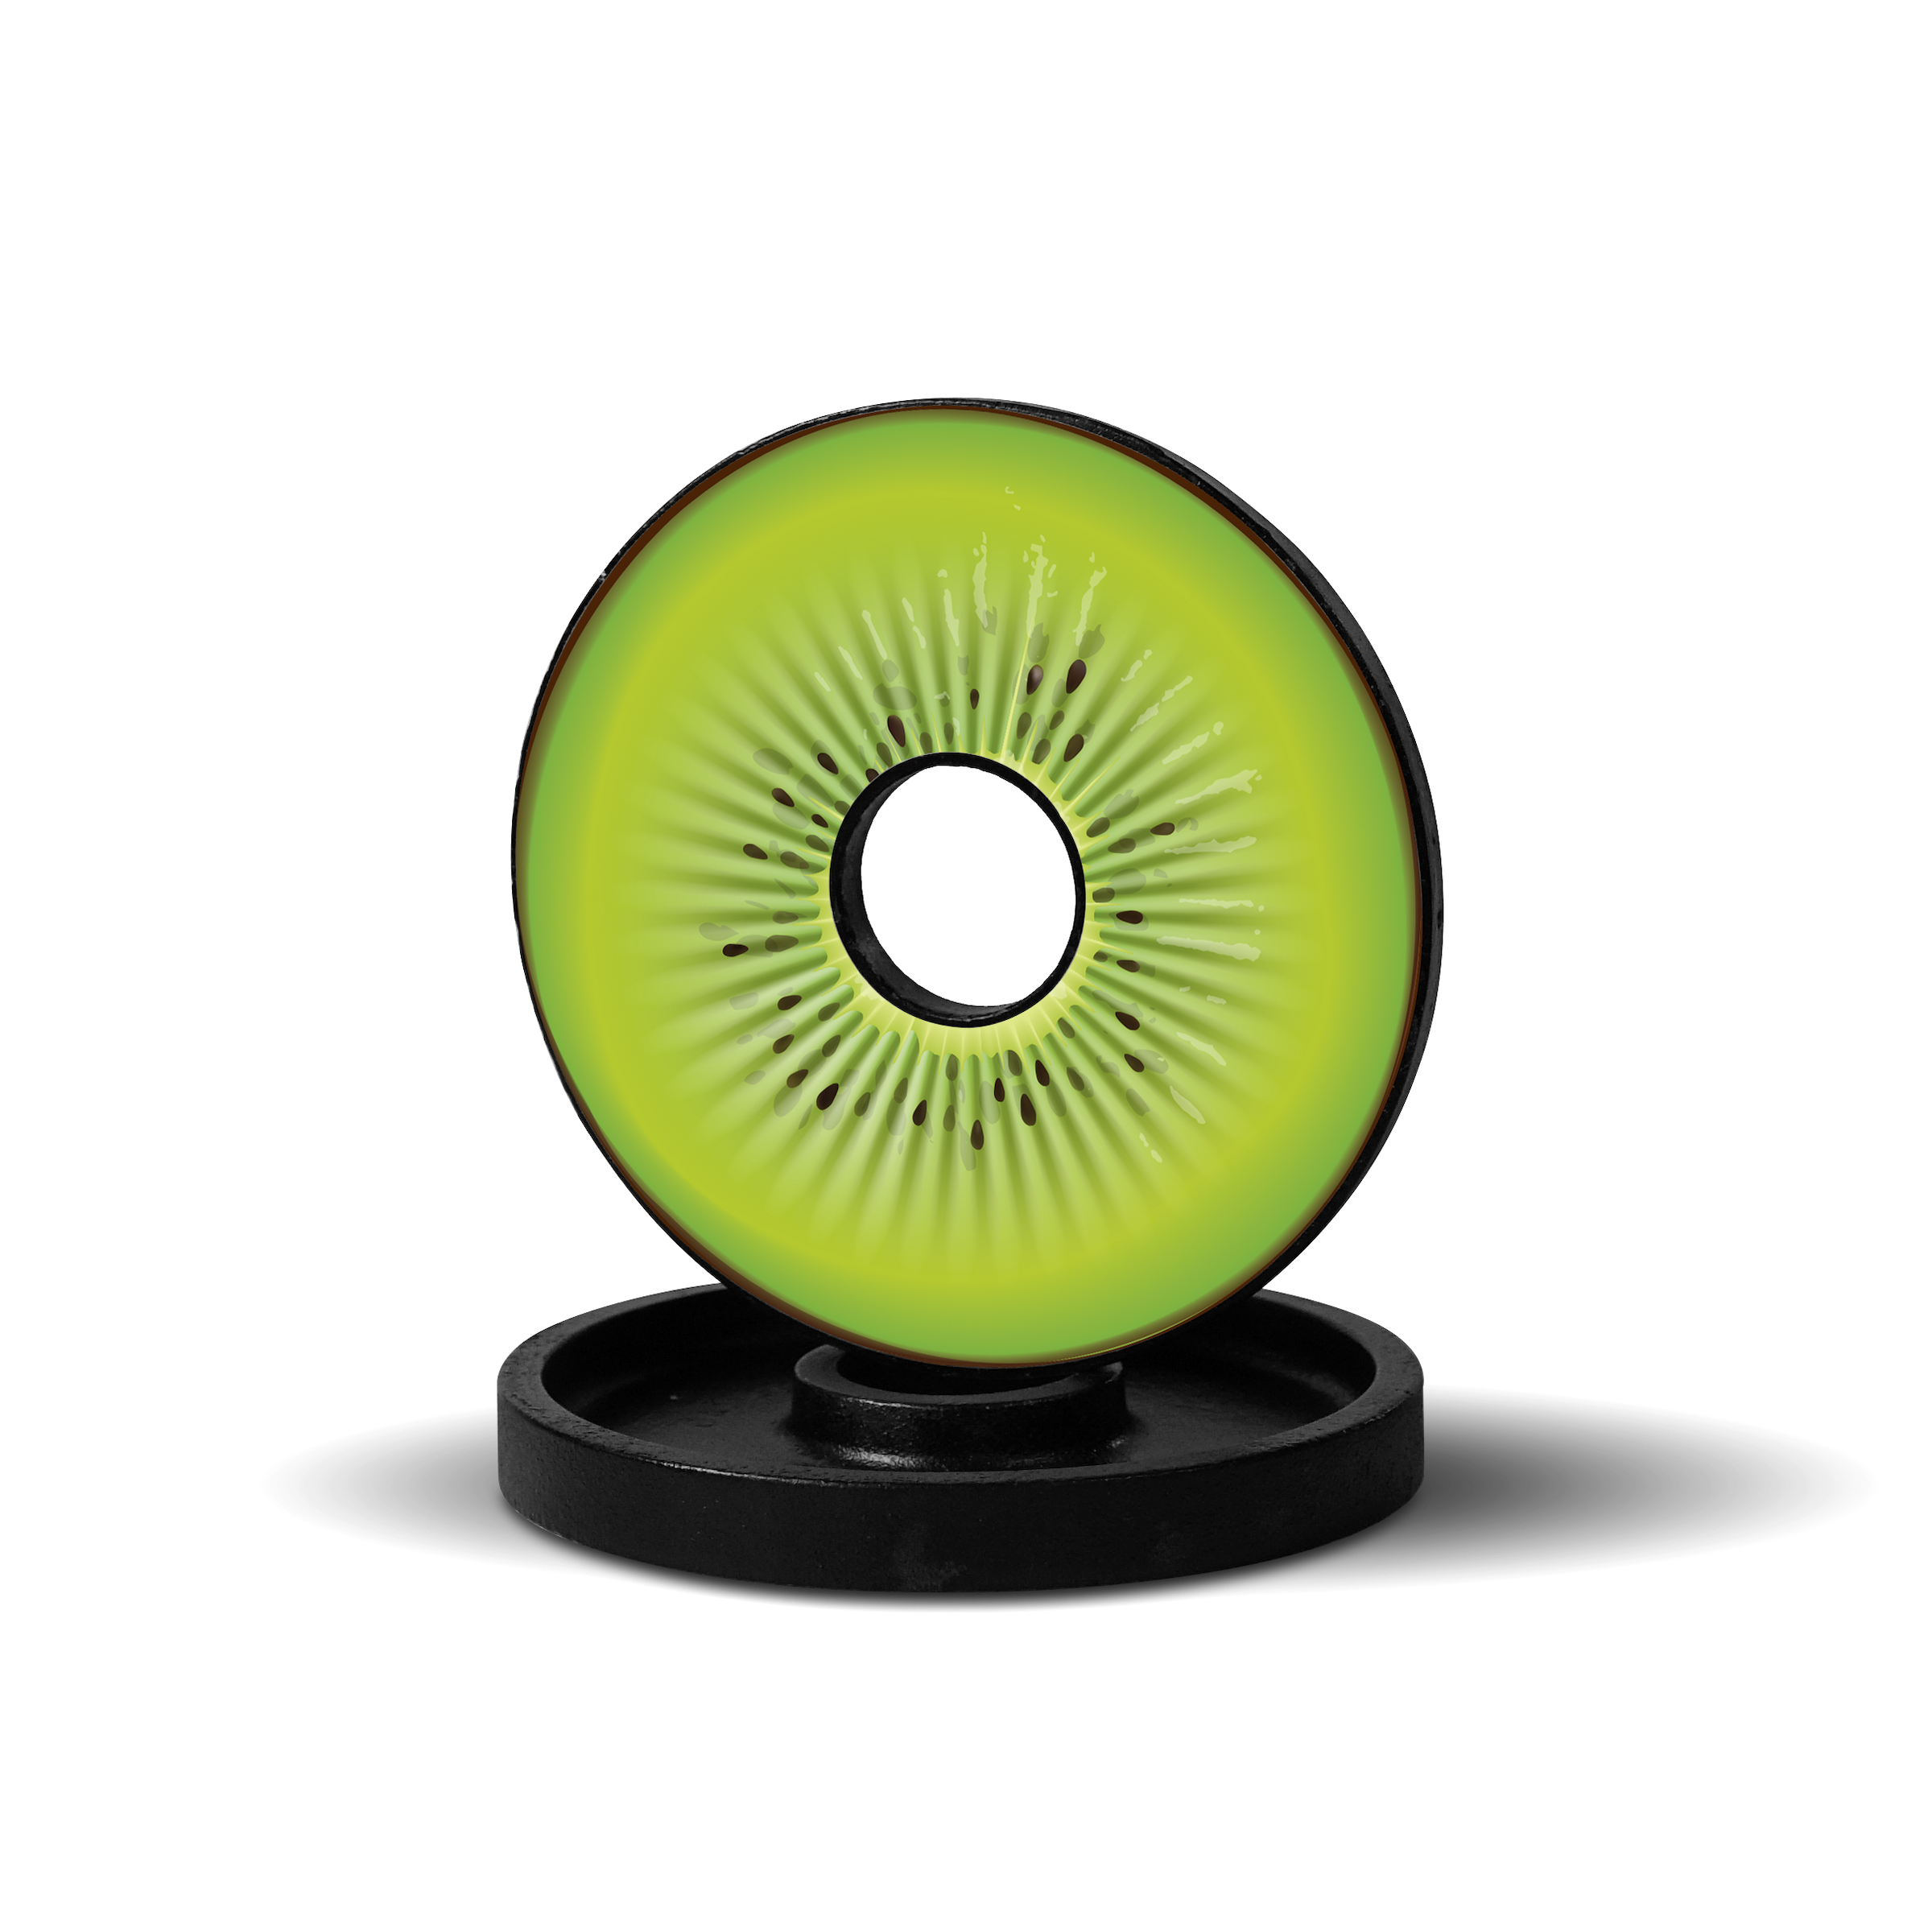 Kiwi - For Iron Plates